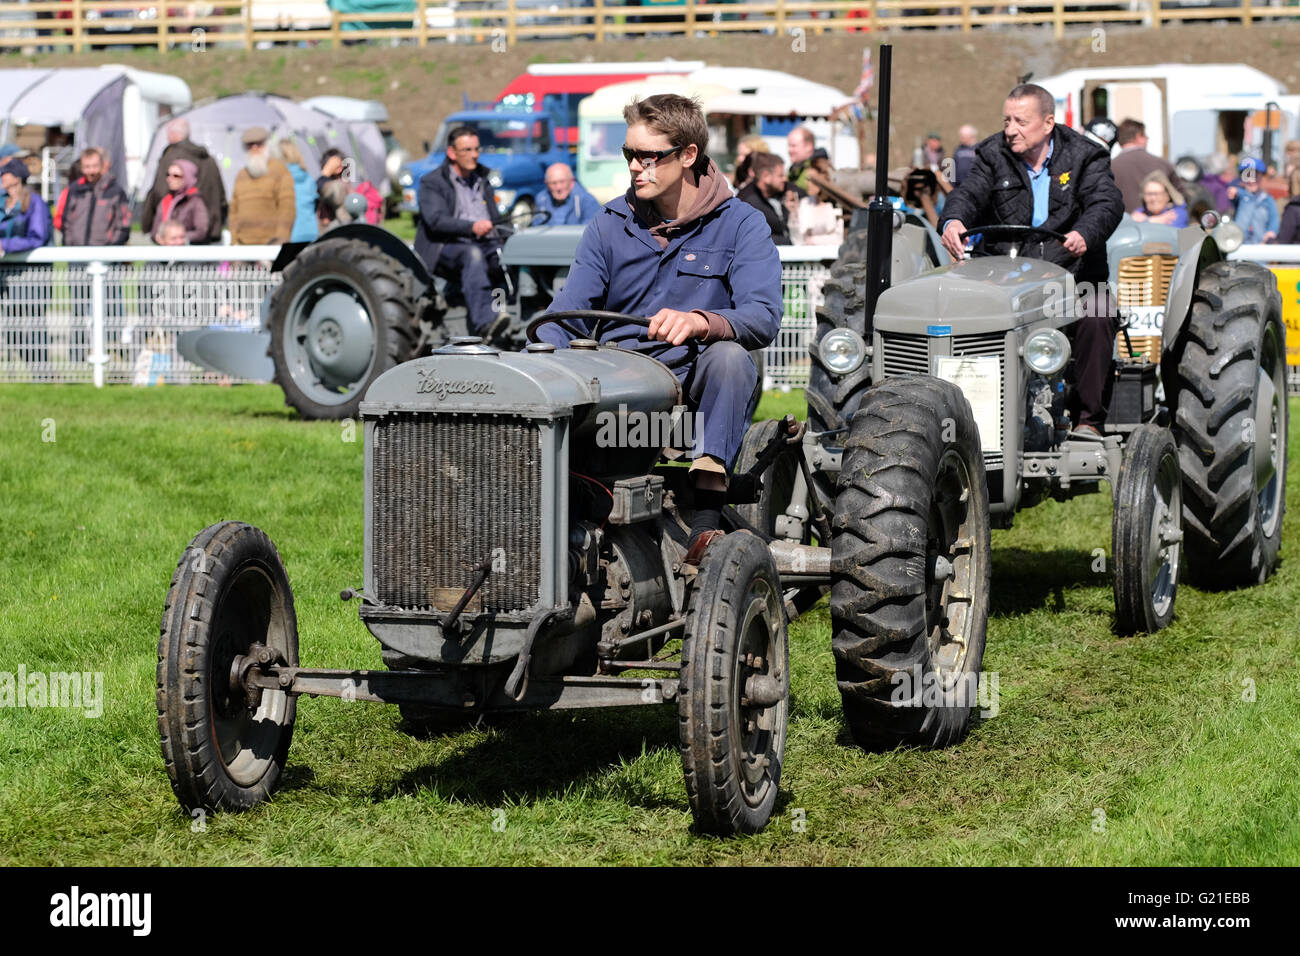 Royal Welsh Festival du printemps, mai 2016 - L'exposition comportait un défilé de voitures anciennes et vintage - tracteurs Ferguson présentée ici est un modèle de tracteur fabriqué à la fin des années 1930 Banque D'Images